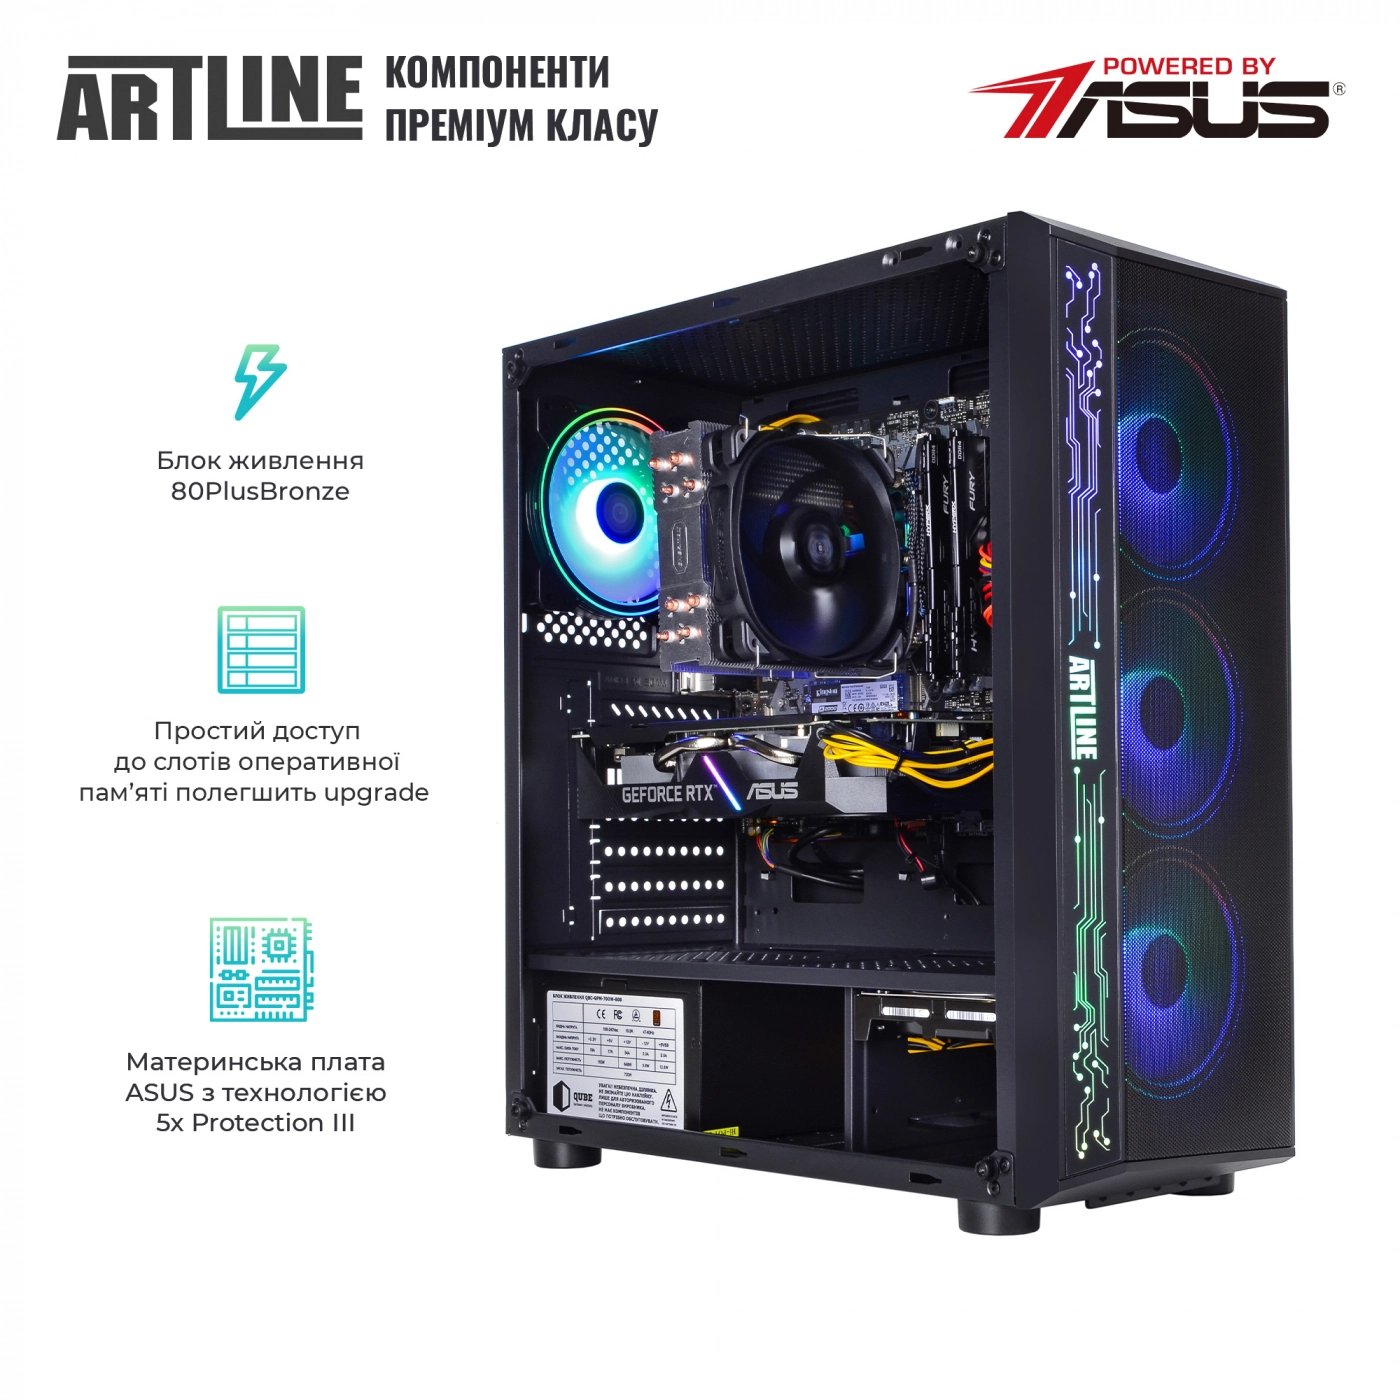 Купить Компьютер ARTLINE Gaming X59v30 - фото 3